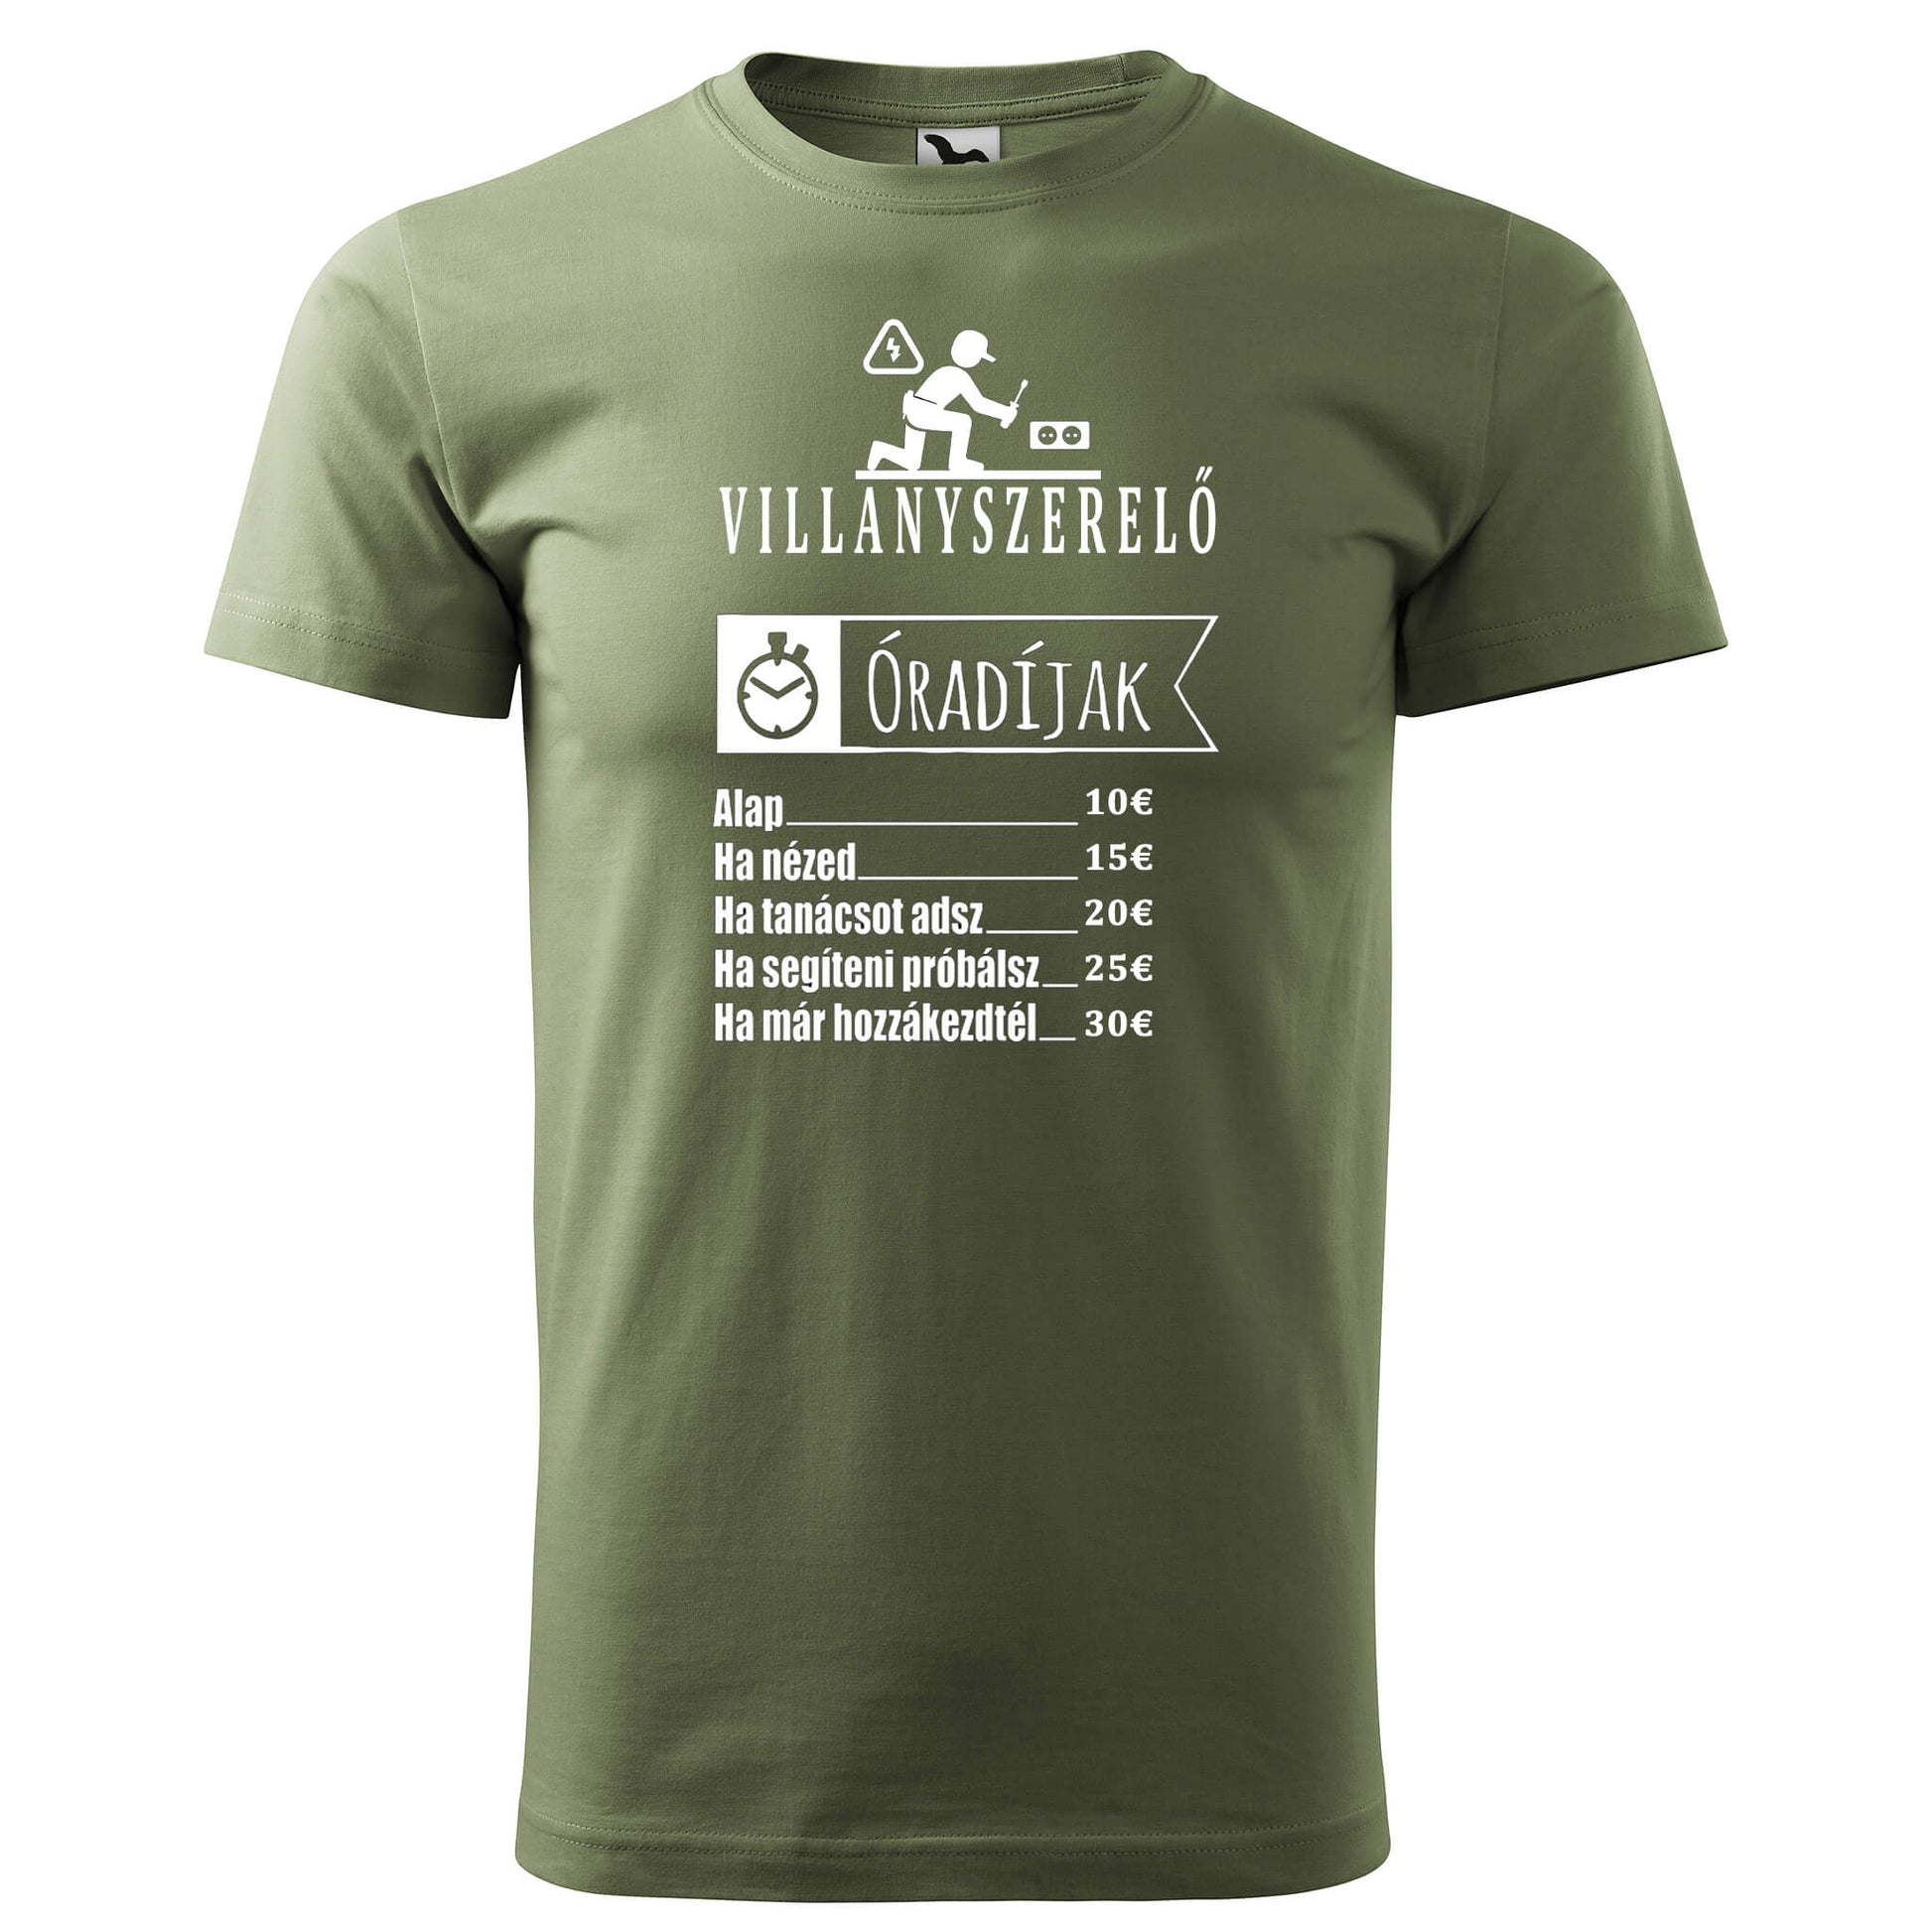 T-shirt - Villanyszerelő óradíjak - rvdesignprint